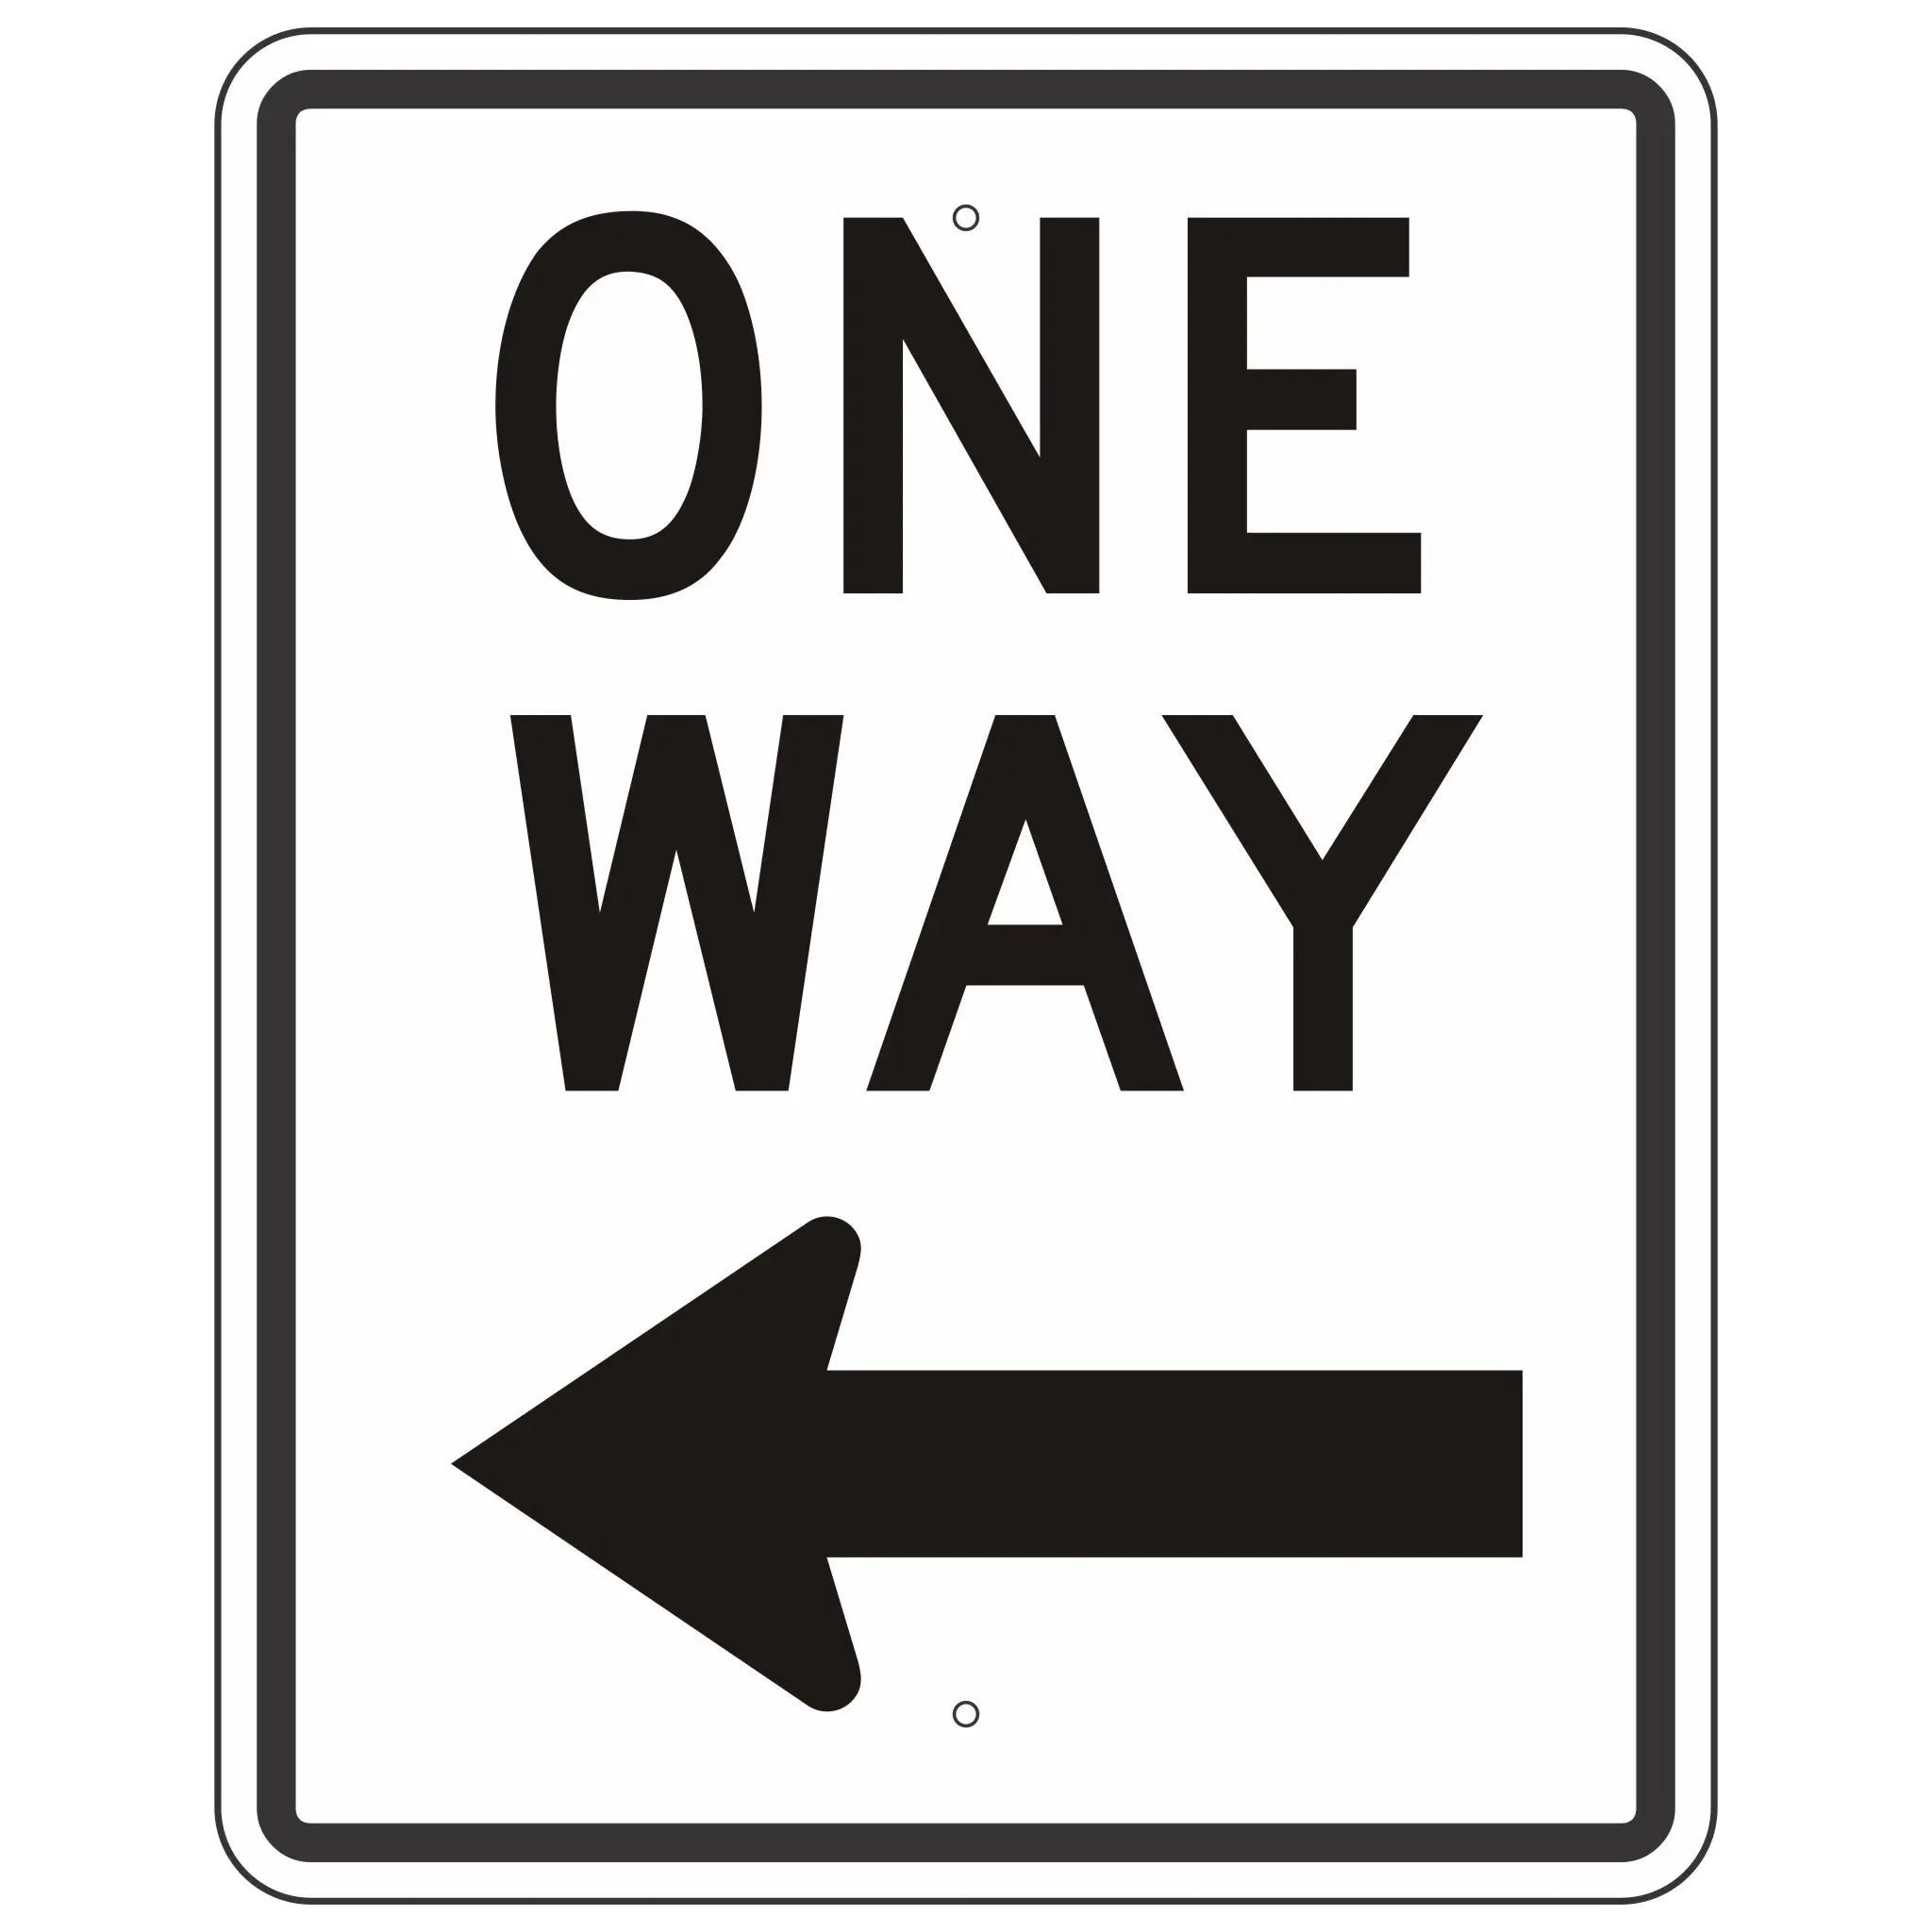 wrong way road sign